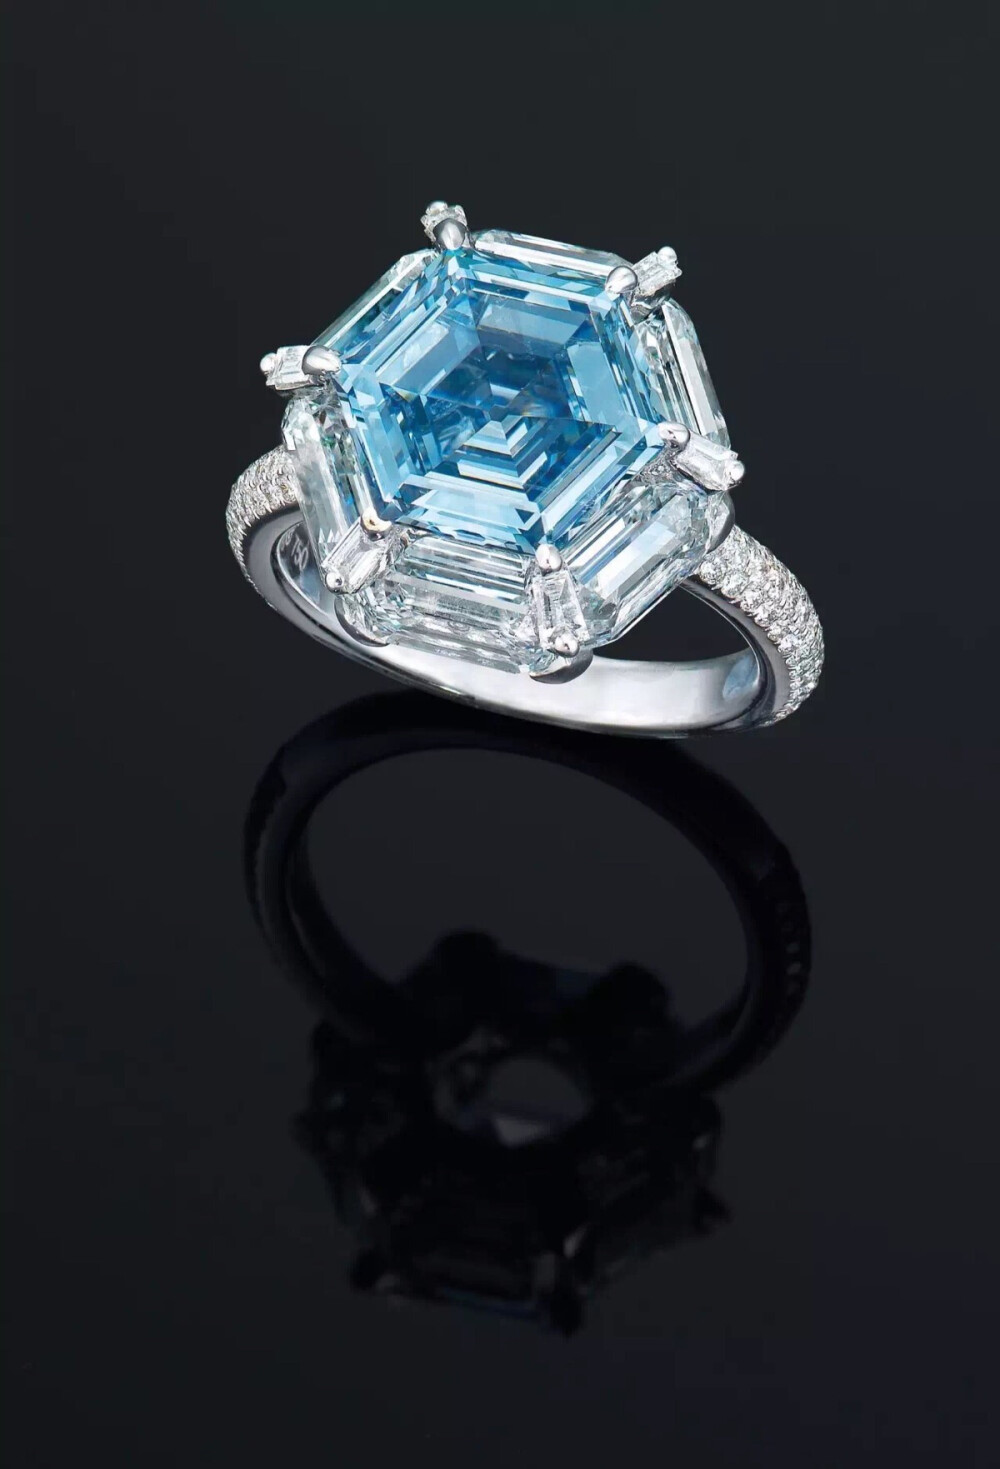 3.37克拉六角形濃彩藍色I1鑽石戒指
Etcetera為Suwa設計